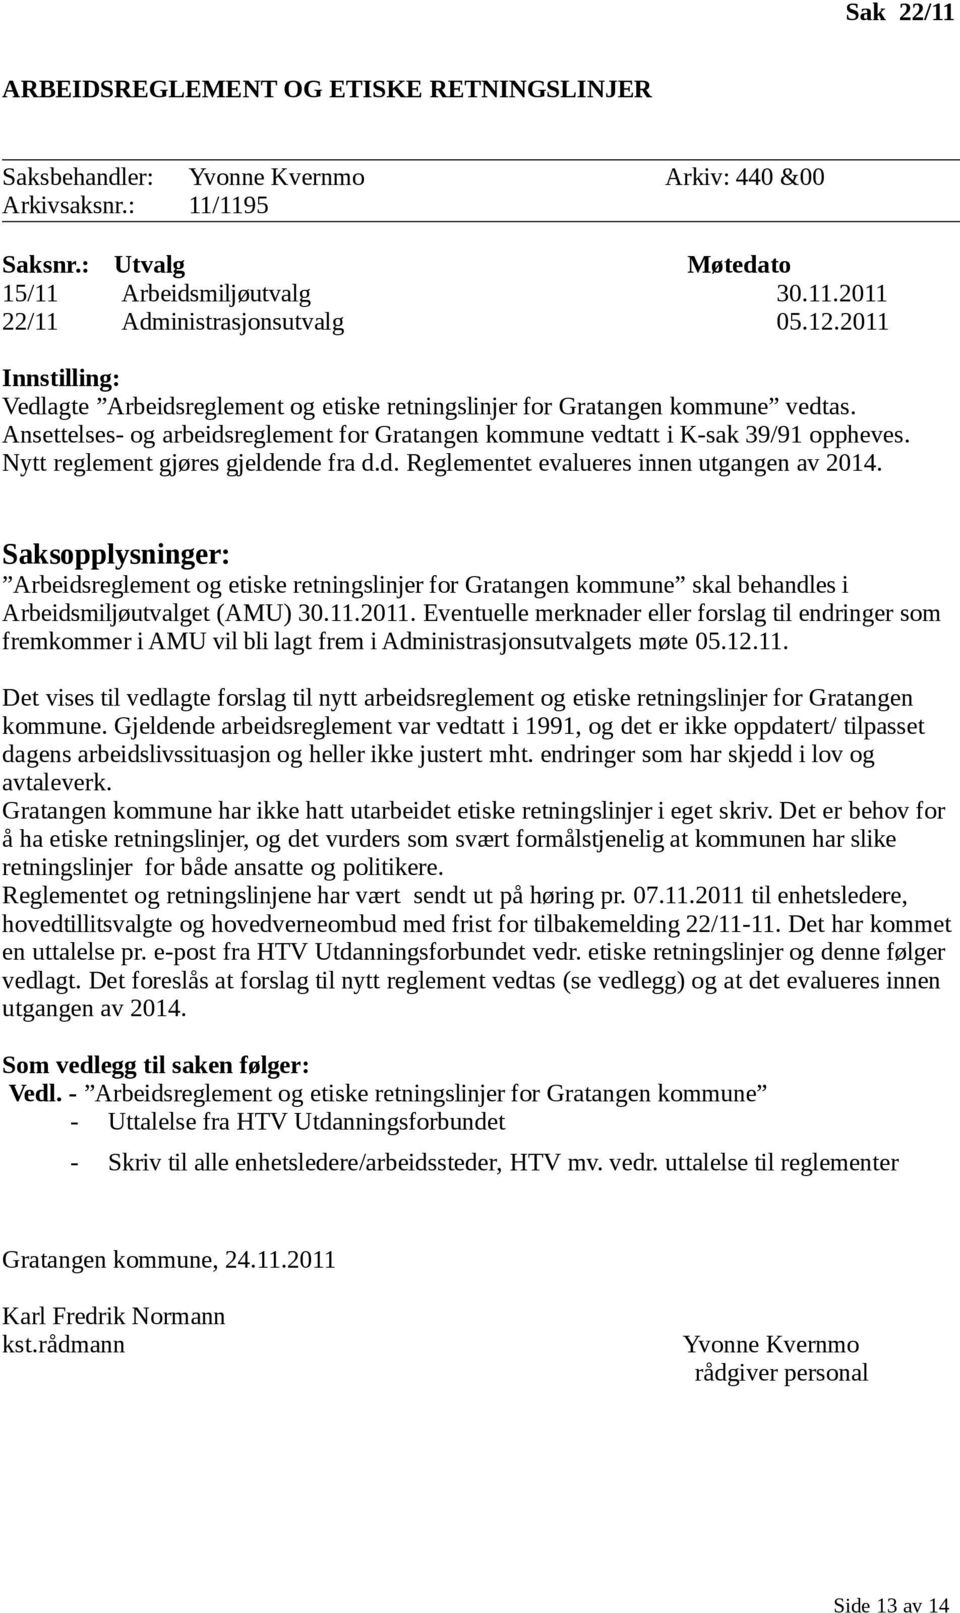 Saksopplysninger: Arbeidsreglement og etiske retningslinjer for Gratangen kommune skal behandles i Arbeidsmiljøutvalget (AMU) 30.11.2011.